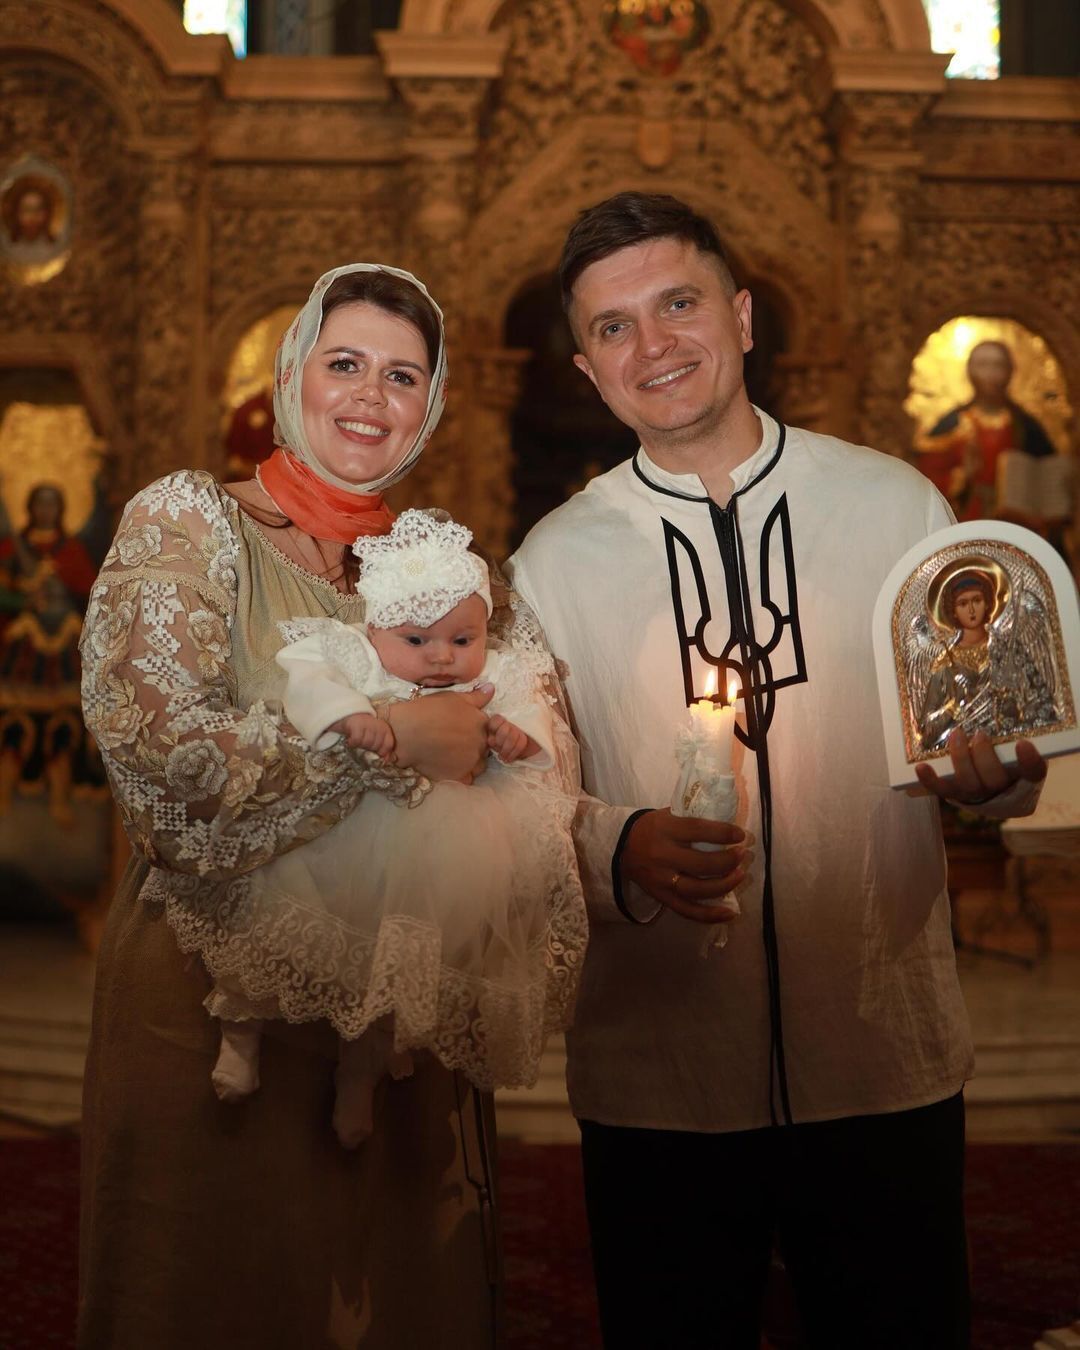 Лиля Ребрик крестила третью дочь и показала своих кумовьев: крестным папой стал известный ведущий. Фото